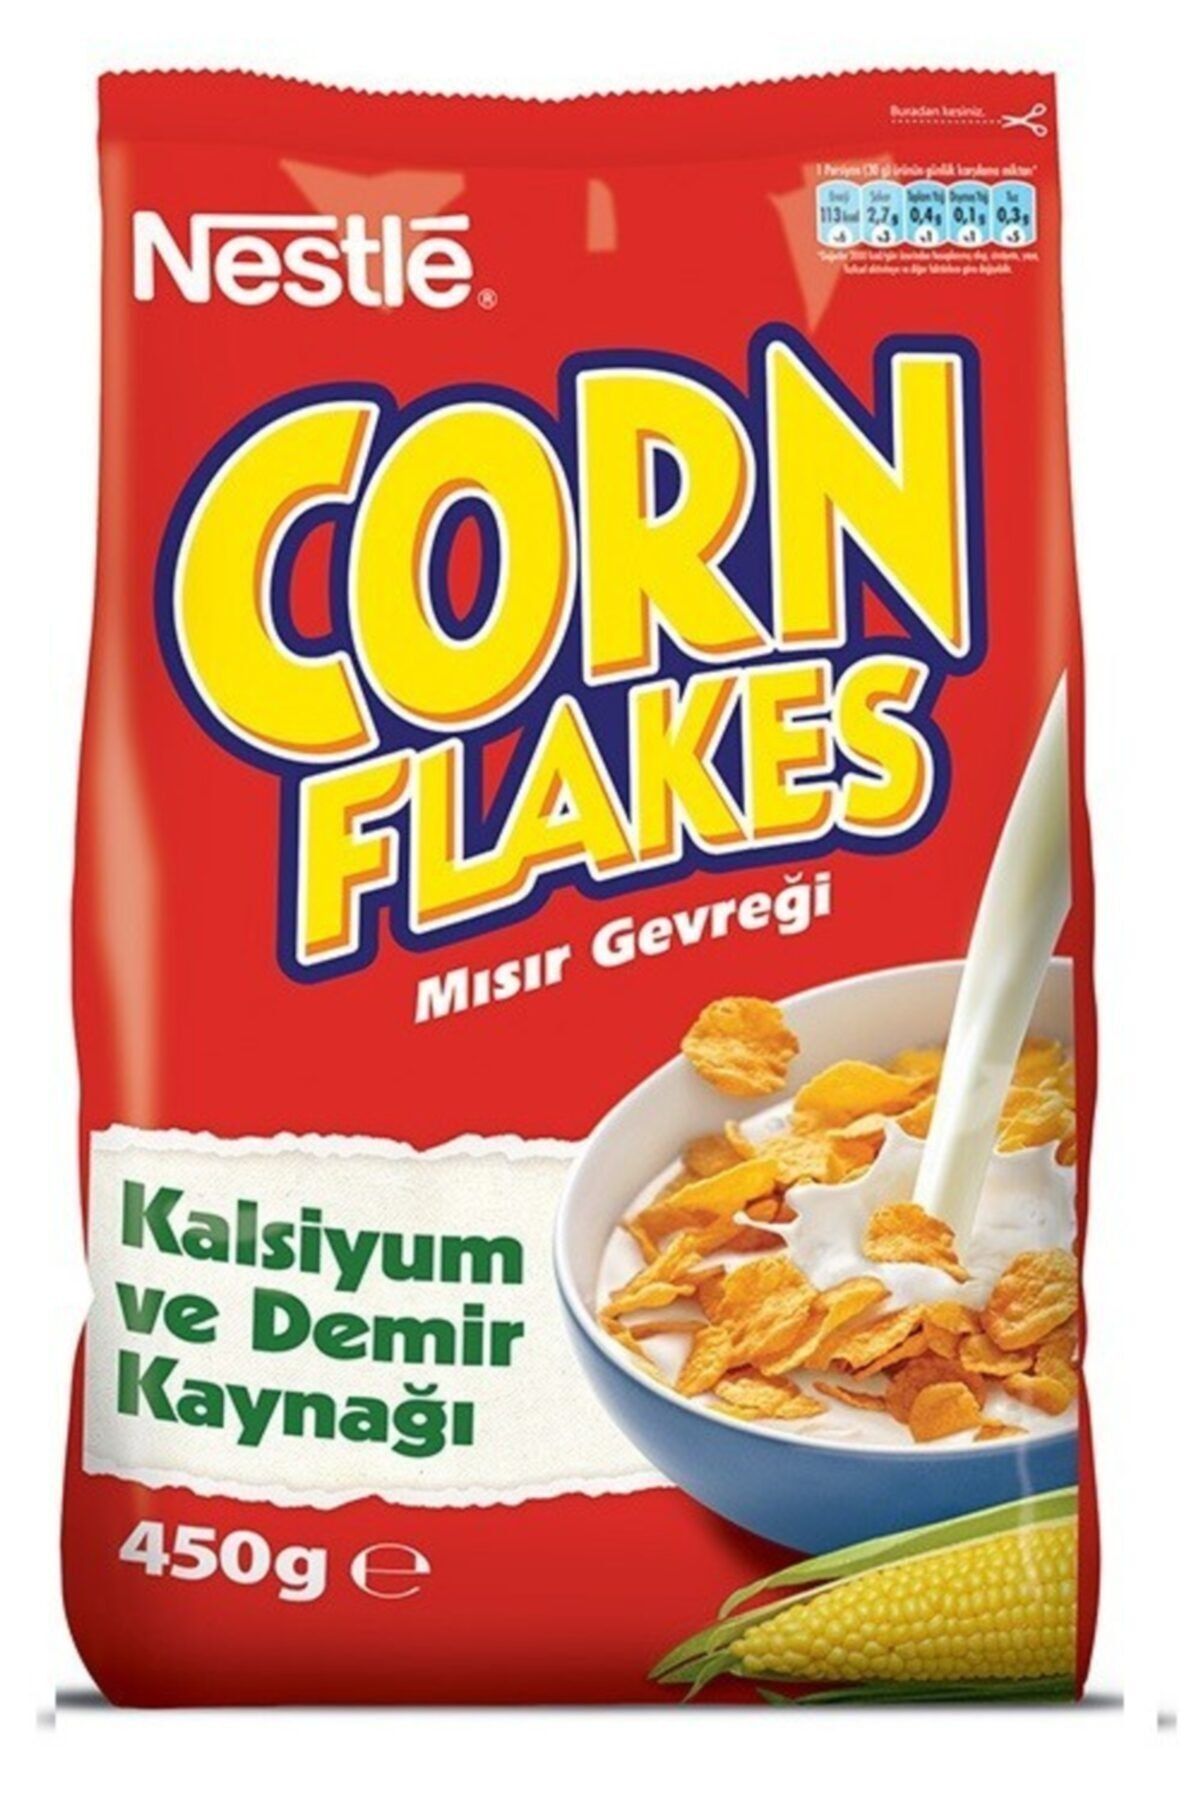 Nestle Corn Flakes Mısır Gevreği 450 gr